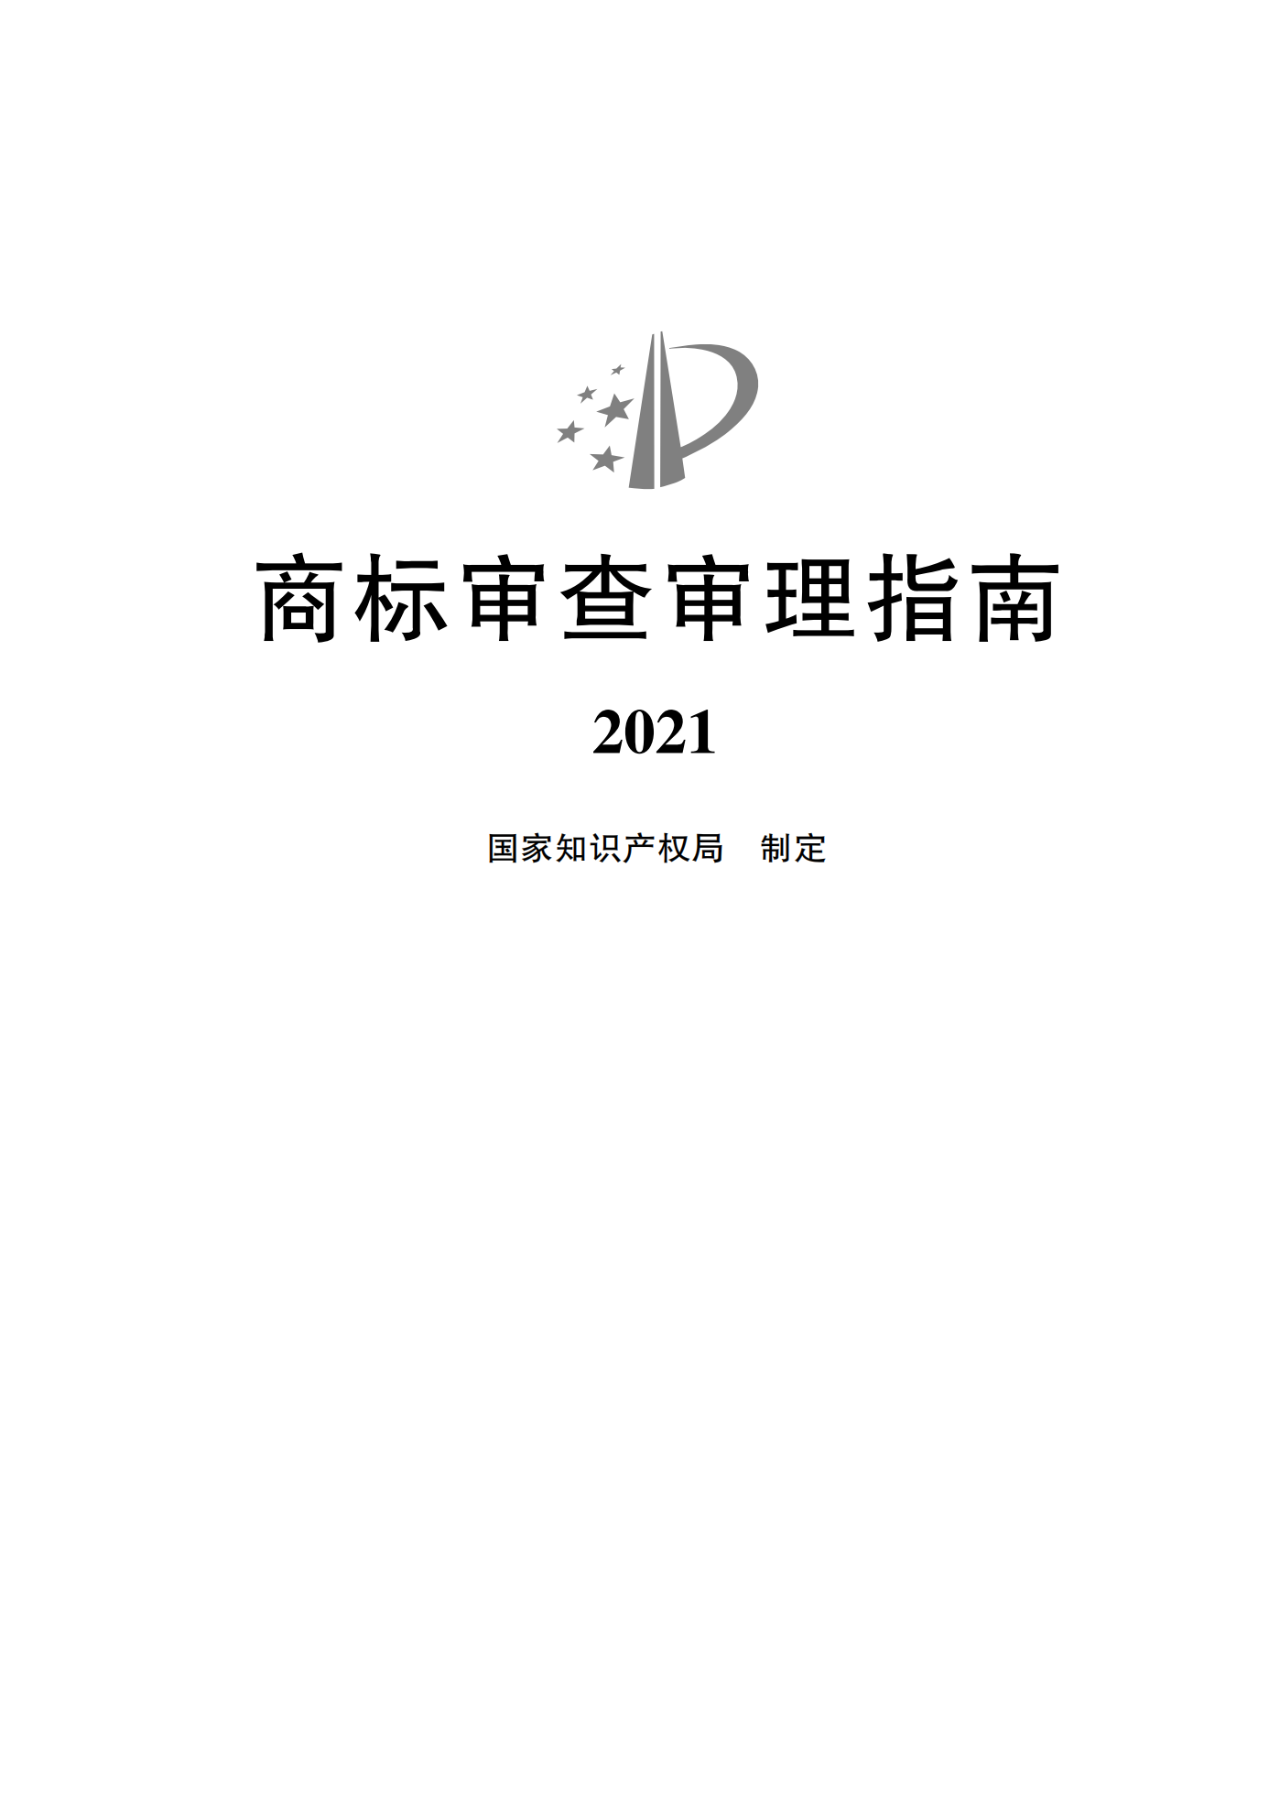 2022.1.1起施行！最新版《商标审查审理指南》发布 | 附全文